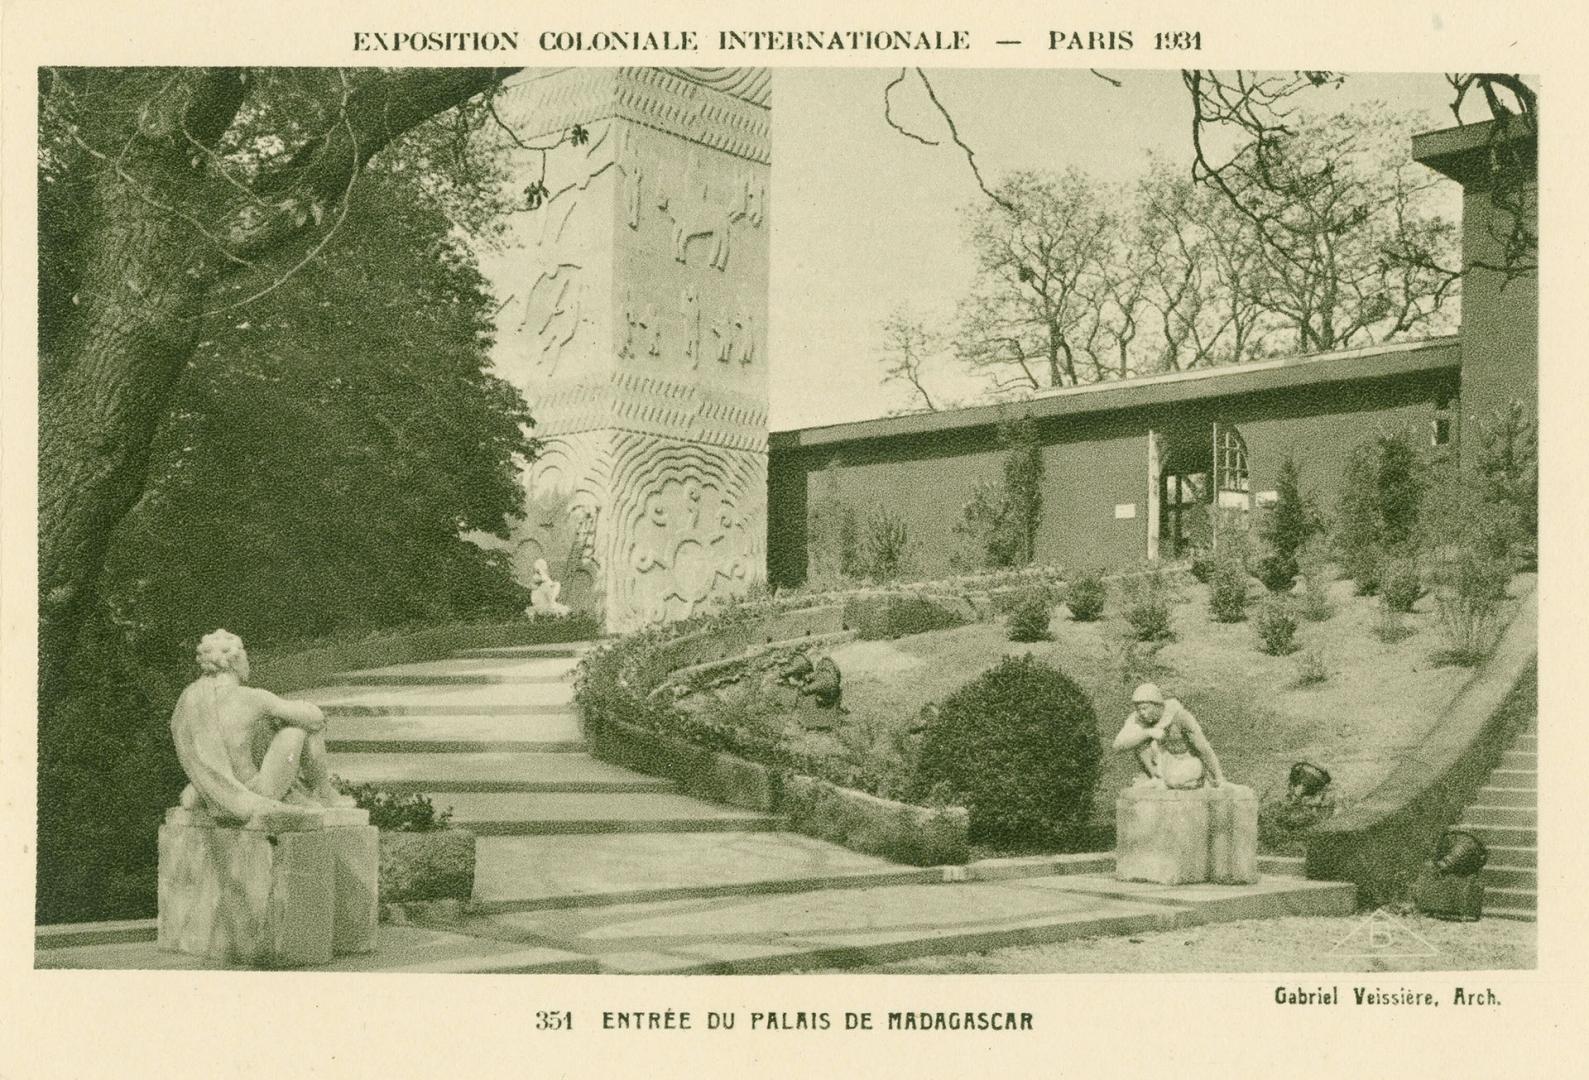 Exposition coloniale internationale, Paris 1931: Entrée du palais de Madagascar